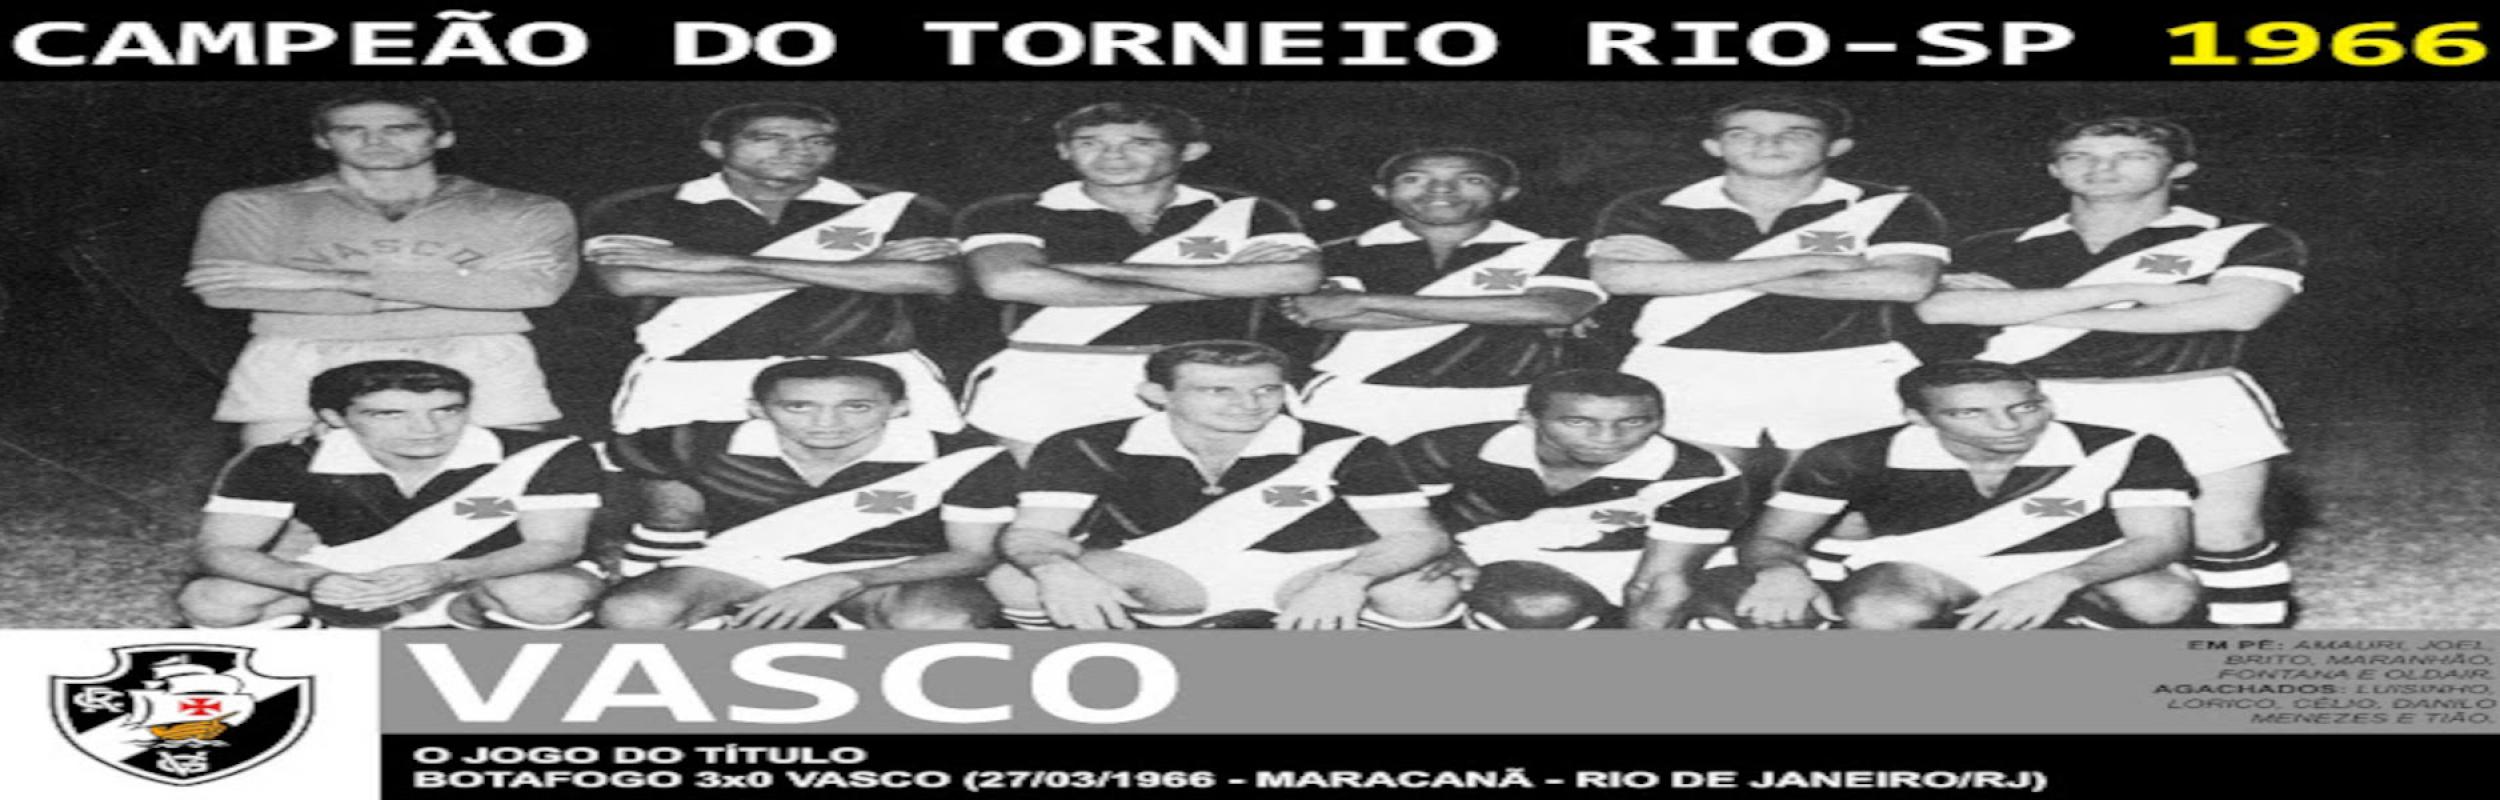 Torneio Rio-São Paulo 1966